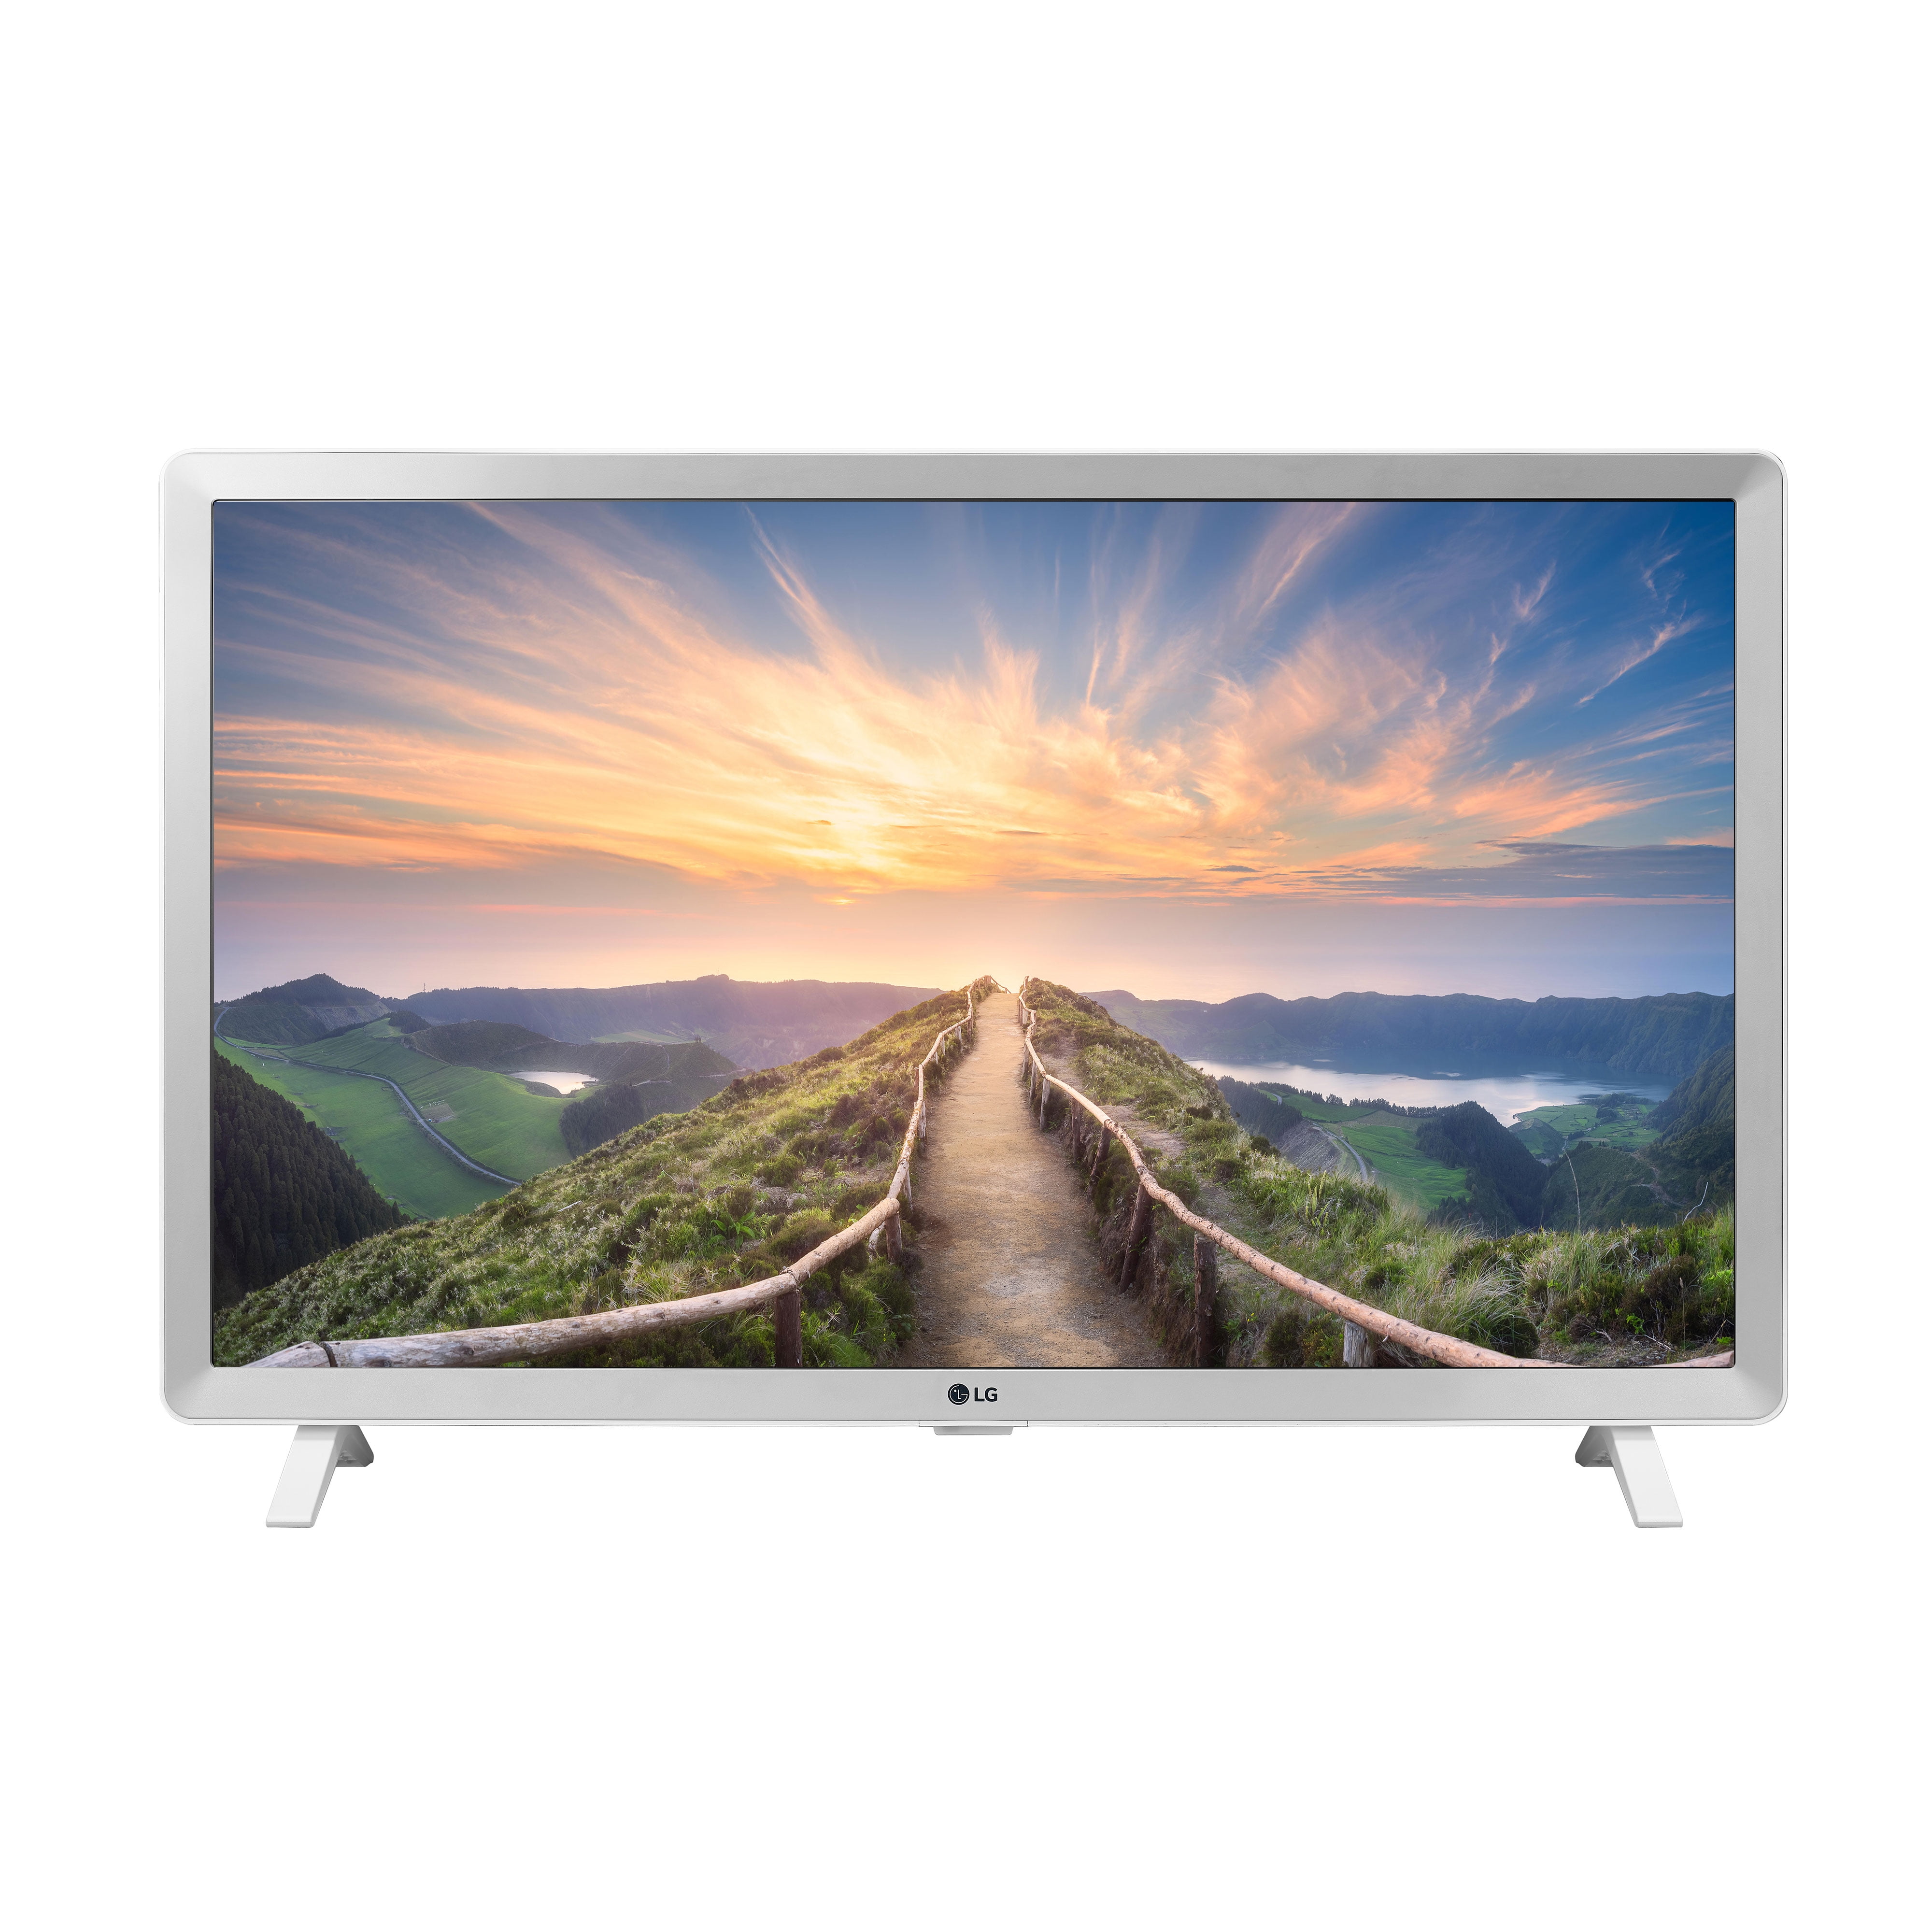 Телевизоры 32 дюйма купить в спб недорого. Телевизор LG Smart TV 32 дюйма. Телевизор led 32 LG 32lm550b. LG led 24. Телевизор LG 32 дюйма смарт ТВ.